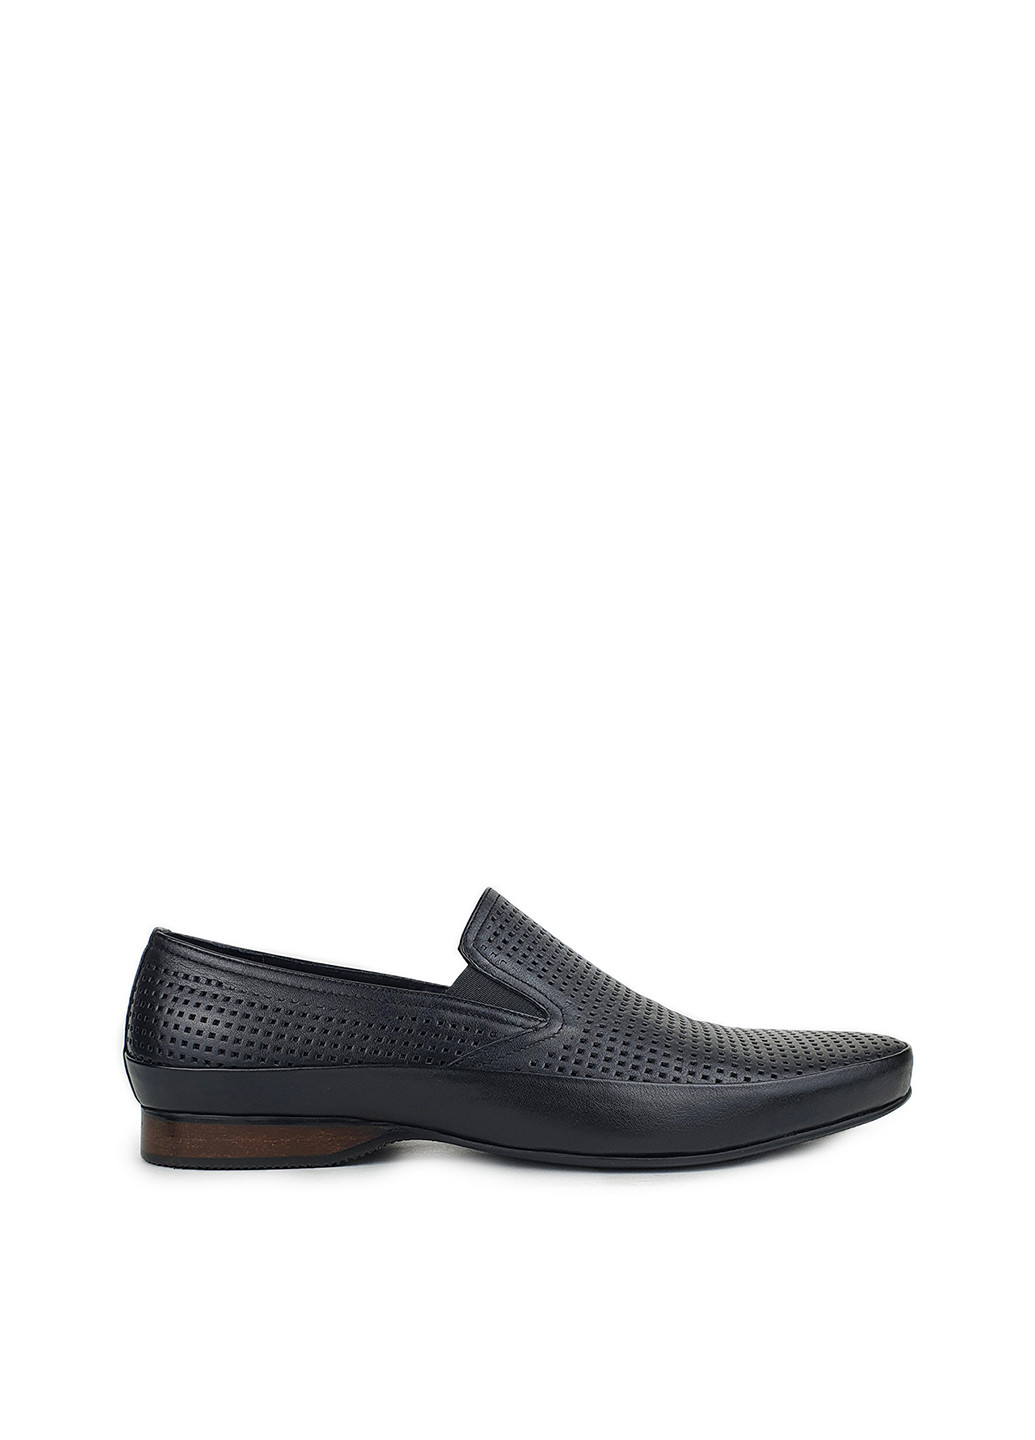 Літні туфлі чоловічі класичні з натуральної шкіри чорні,,MP759-1-1чер кож,39 Cosottinni (274376096)